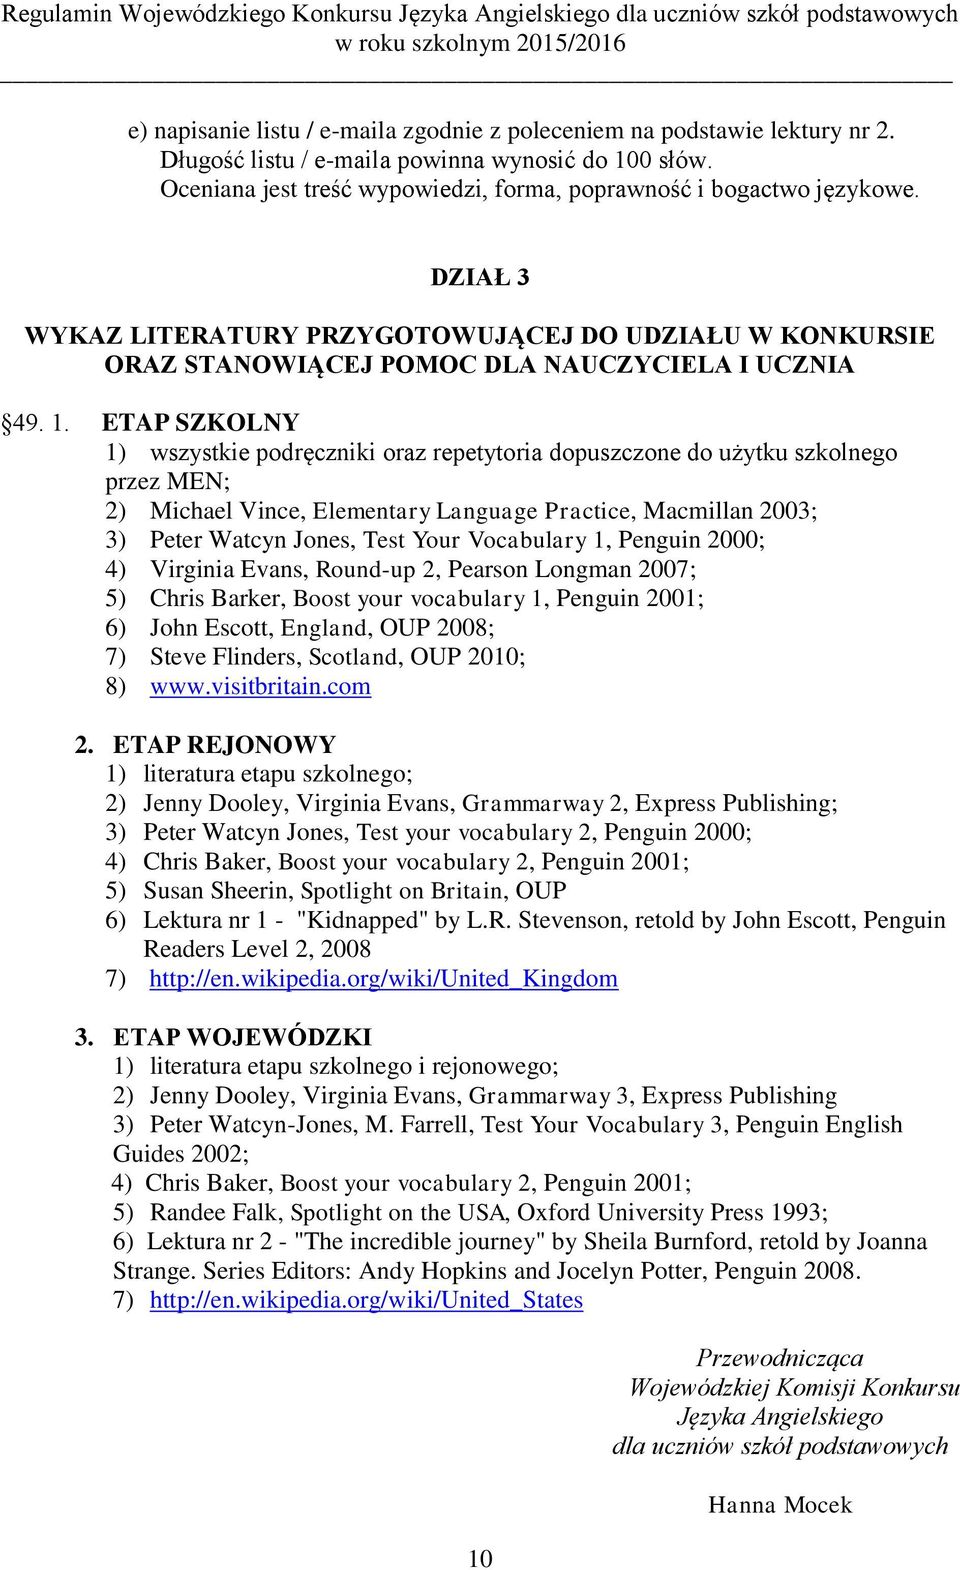 ETAP SZKOLNY 1) wszystkie podręczniki oraz repetytoria dopuszczone do użytku szkolnego przez MEN; 2) Michael Vince, Elementary Language Practice, Macmillan 2003; 3) Peter Watcyn Jones, Test Your